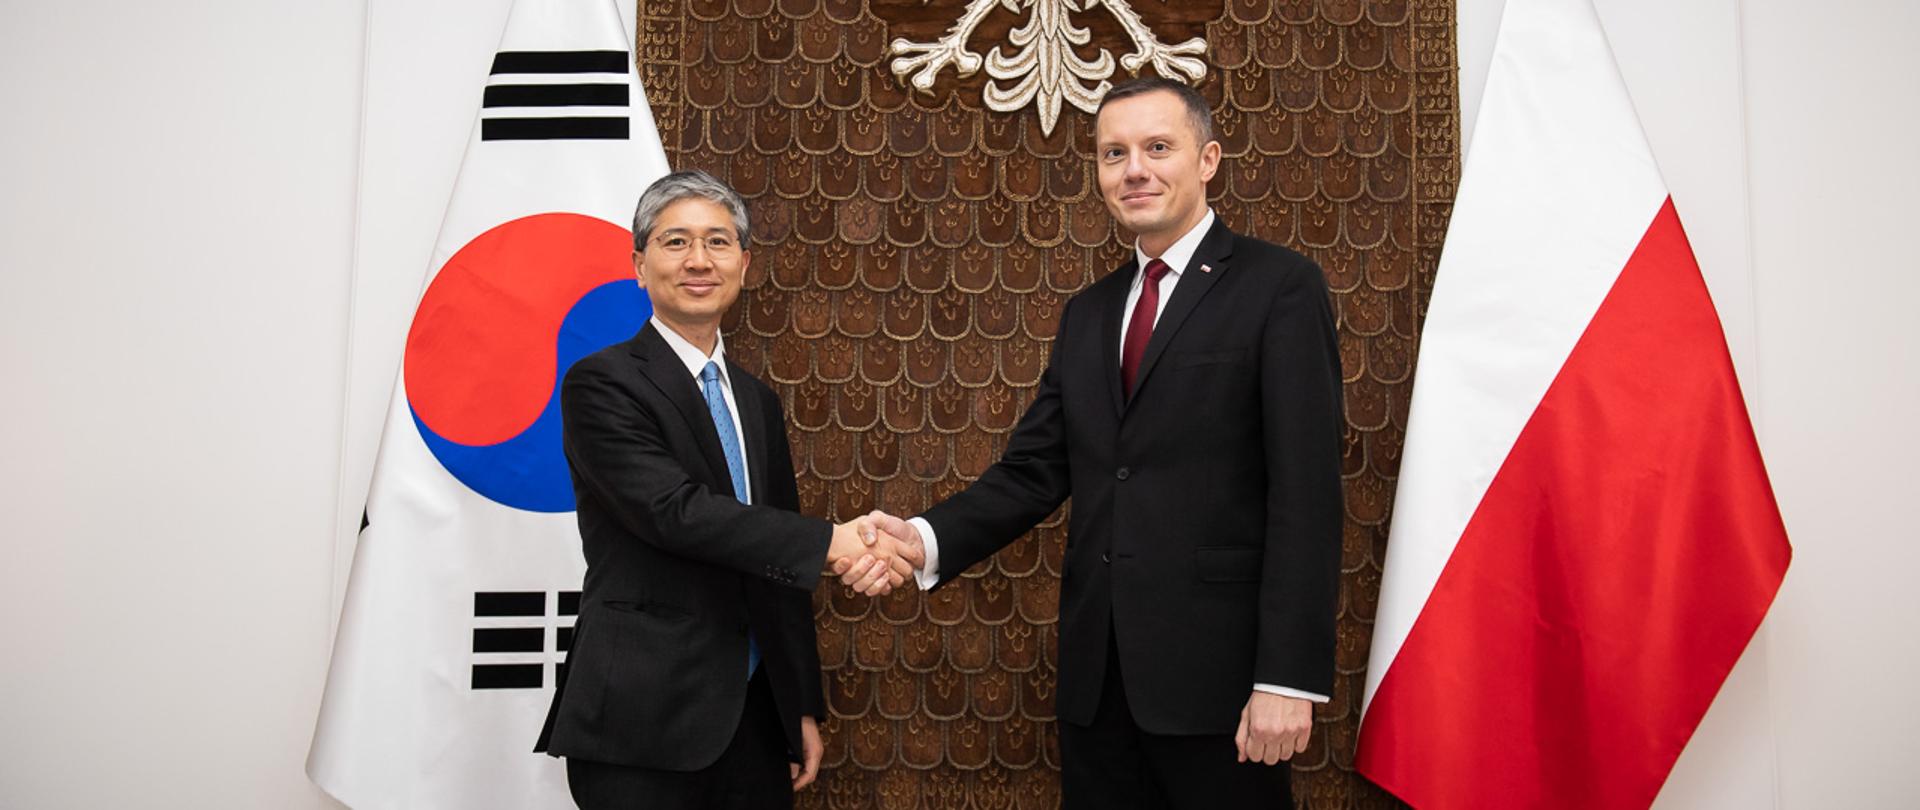 Spotkanie wiceministra obrony narodowej Tomasza Zdzikota z wiceministrem obrony narodowej Republiki Korei Południowej - oficjalne przywitanie w siedzibie MON w Warszawie. 